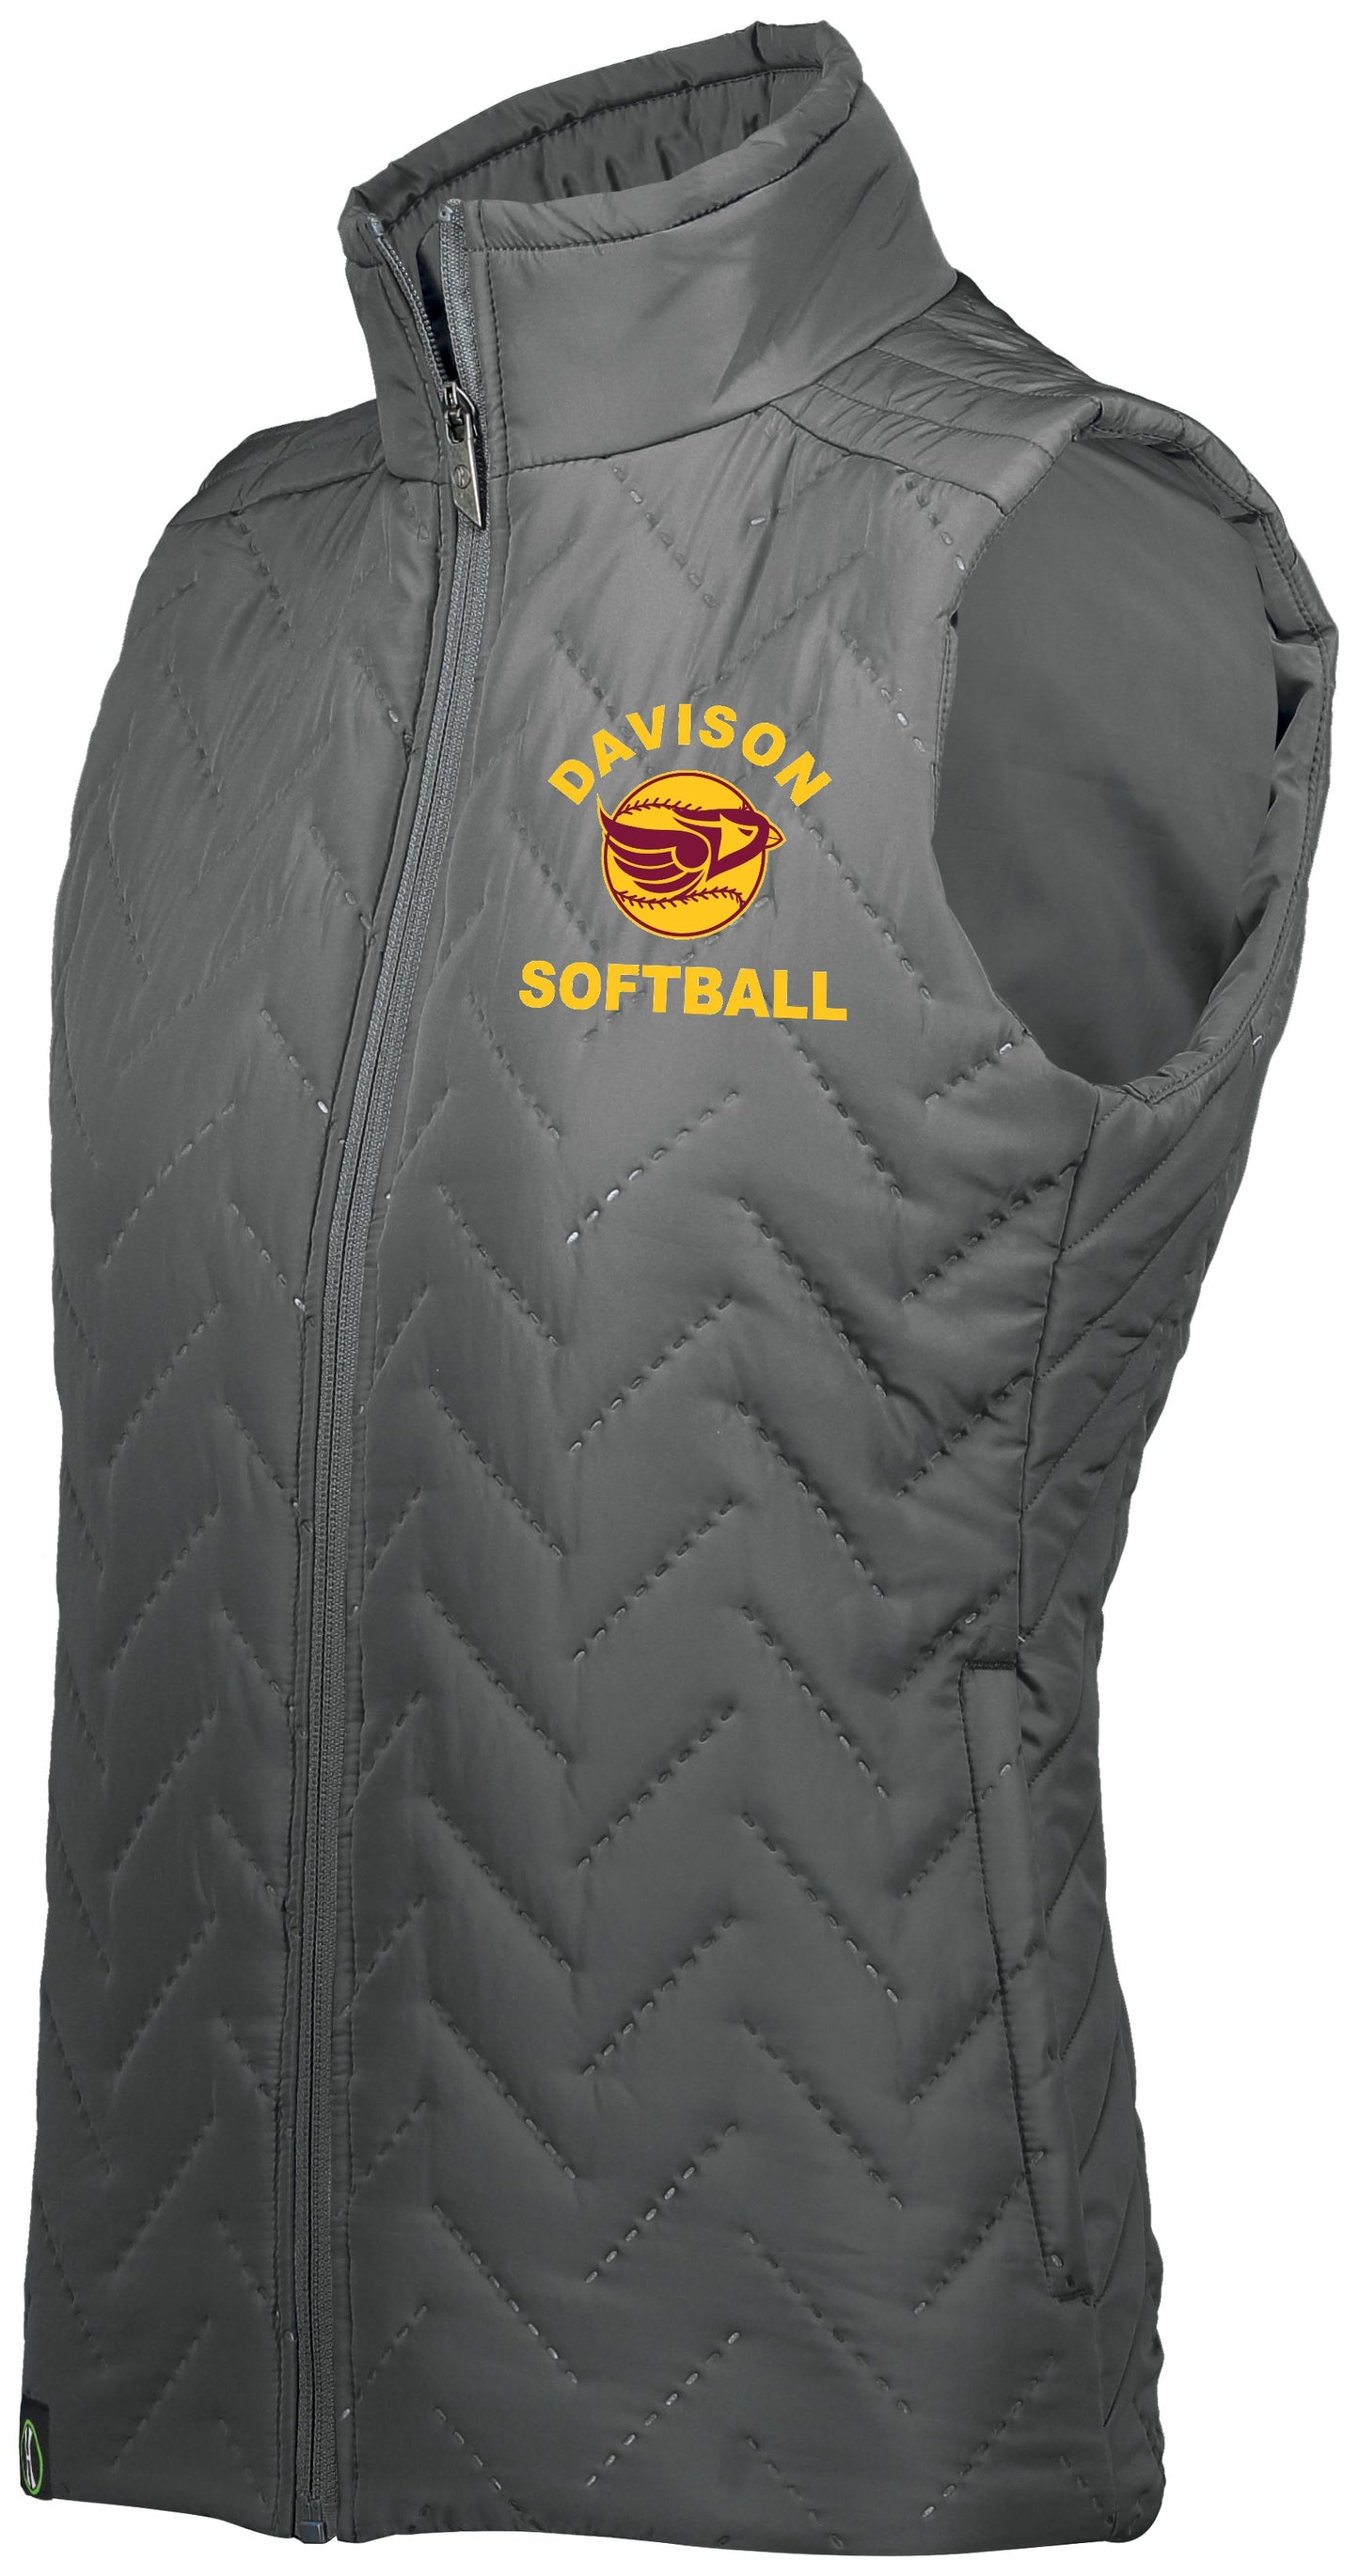 Davison Softball Repreve Vest